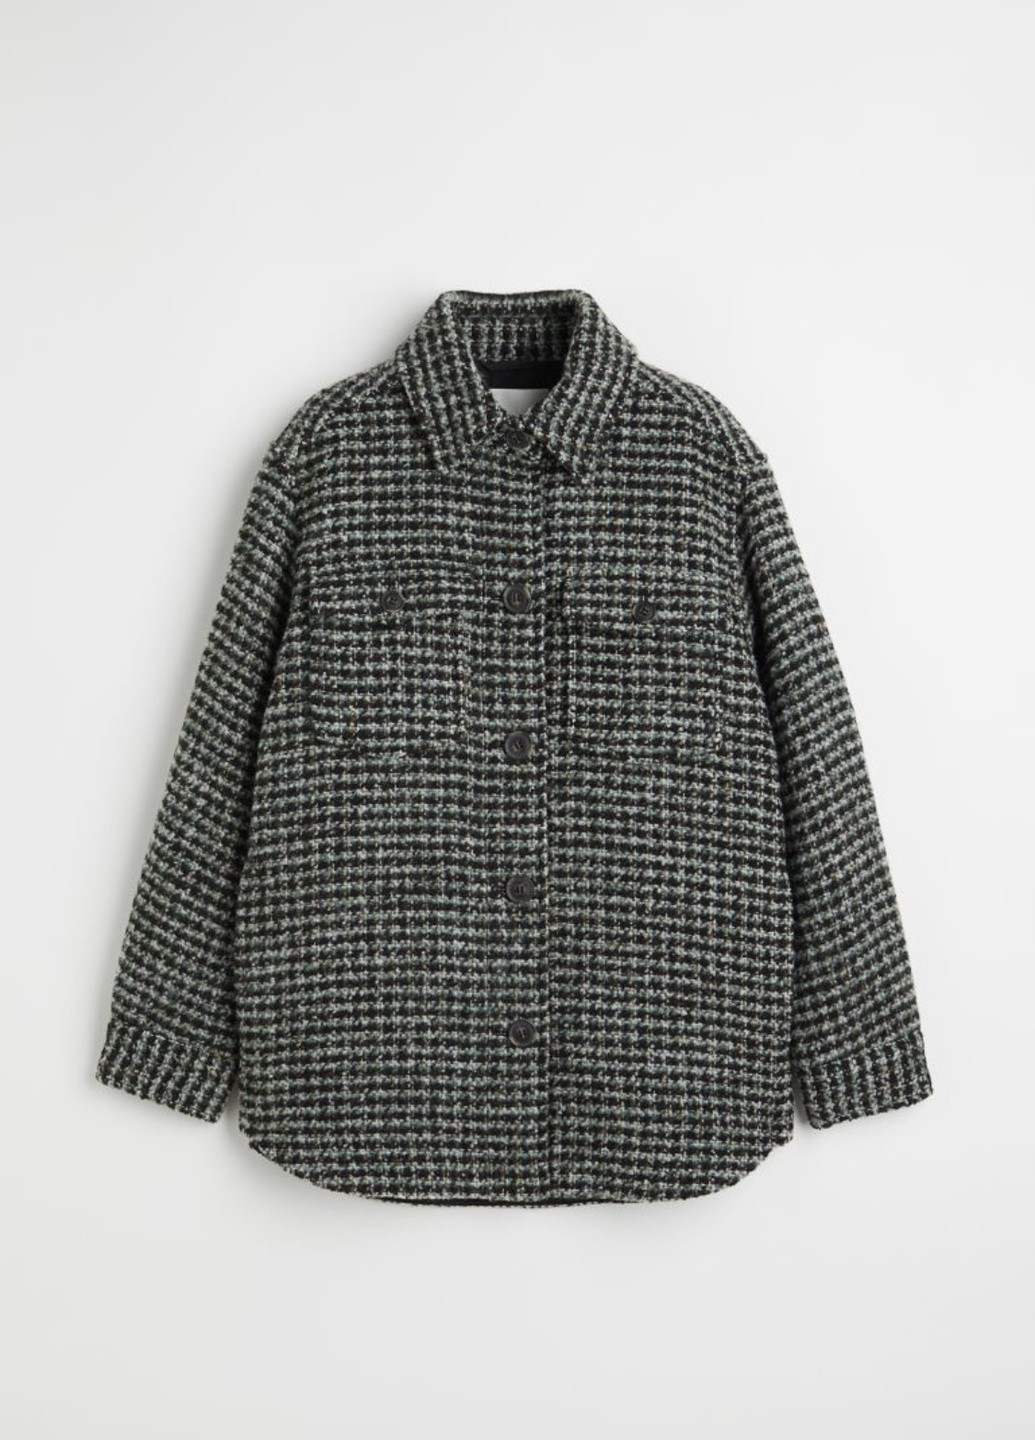 Комбинированная демисезонная куртка рубашка с шерсью H&M Утеплена